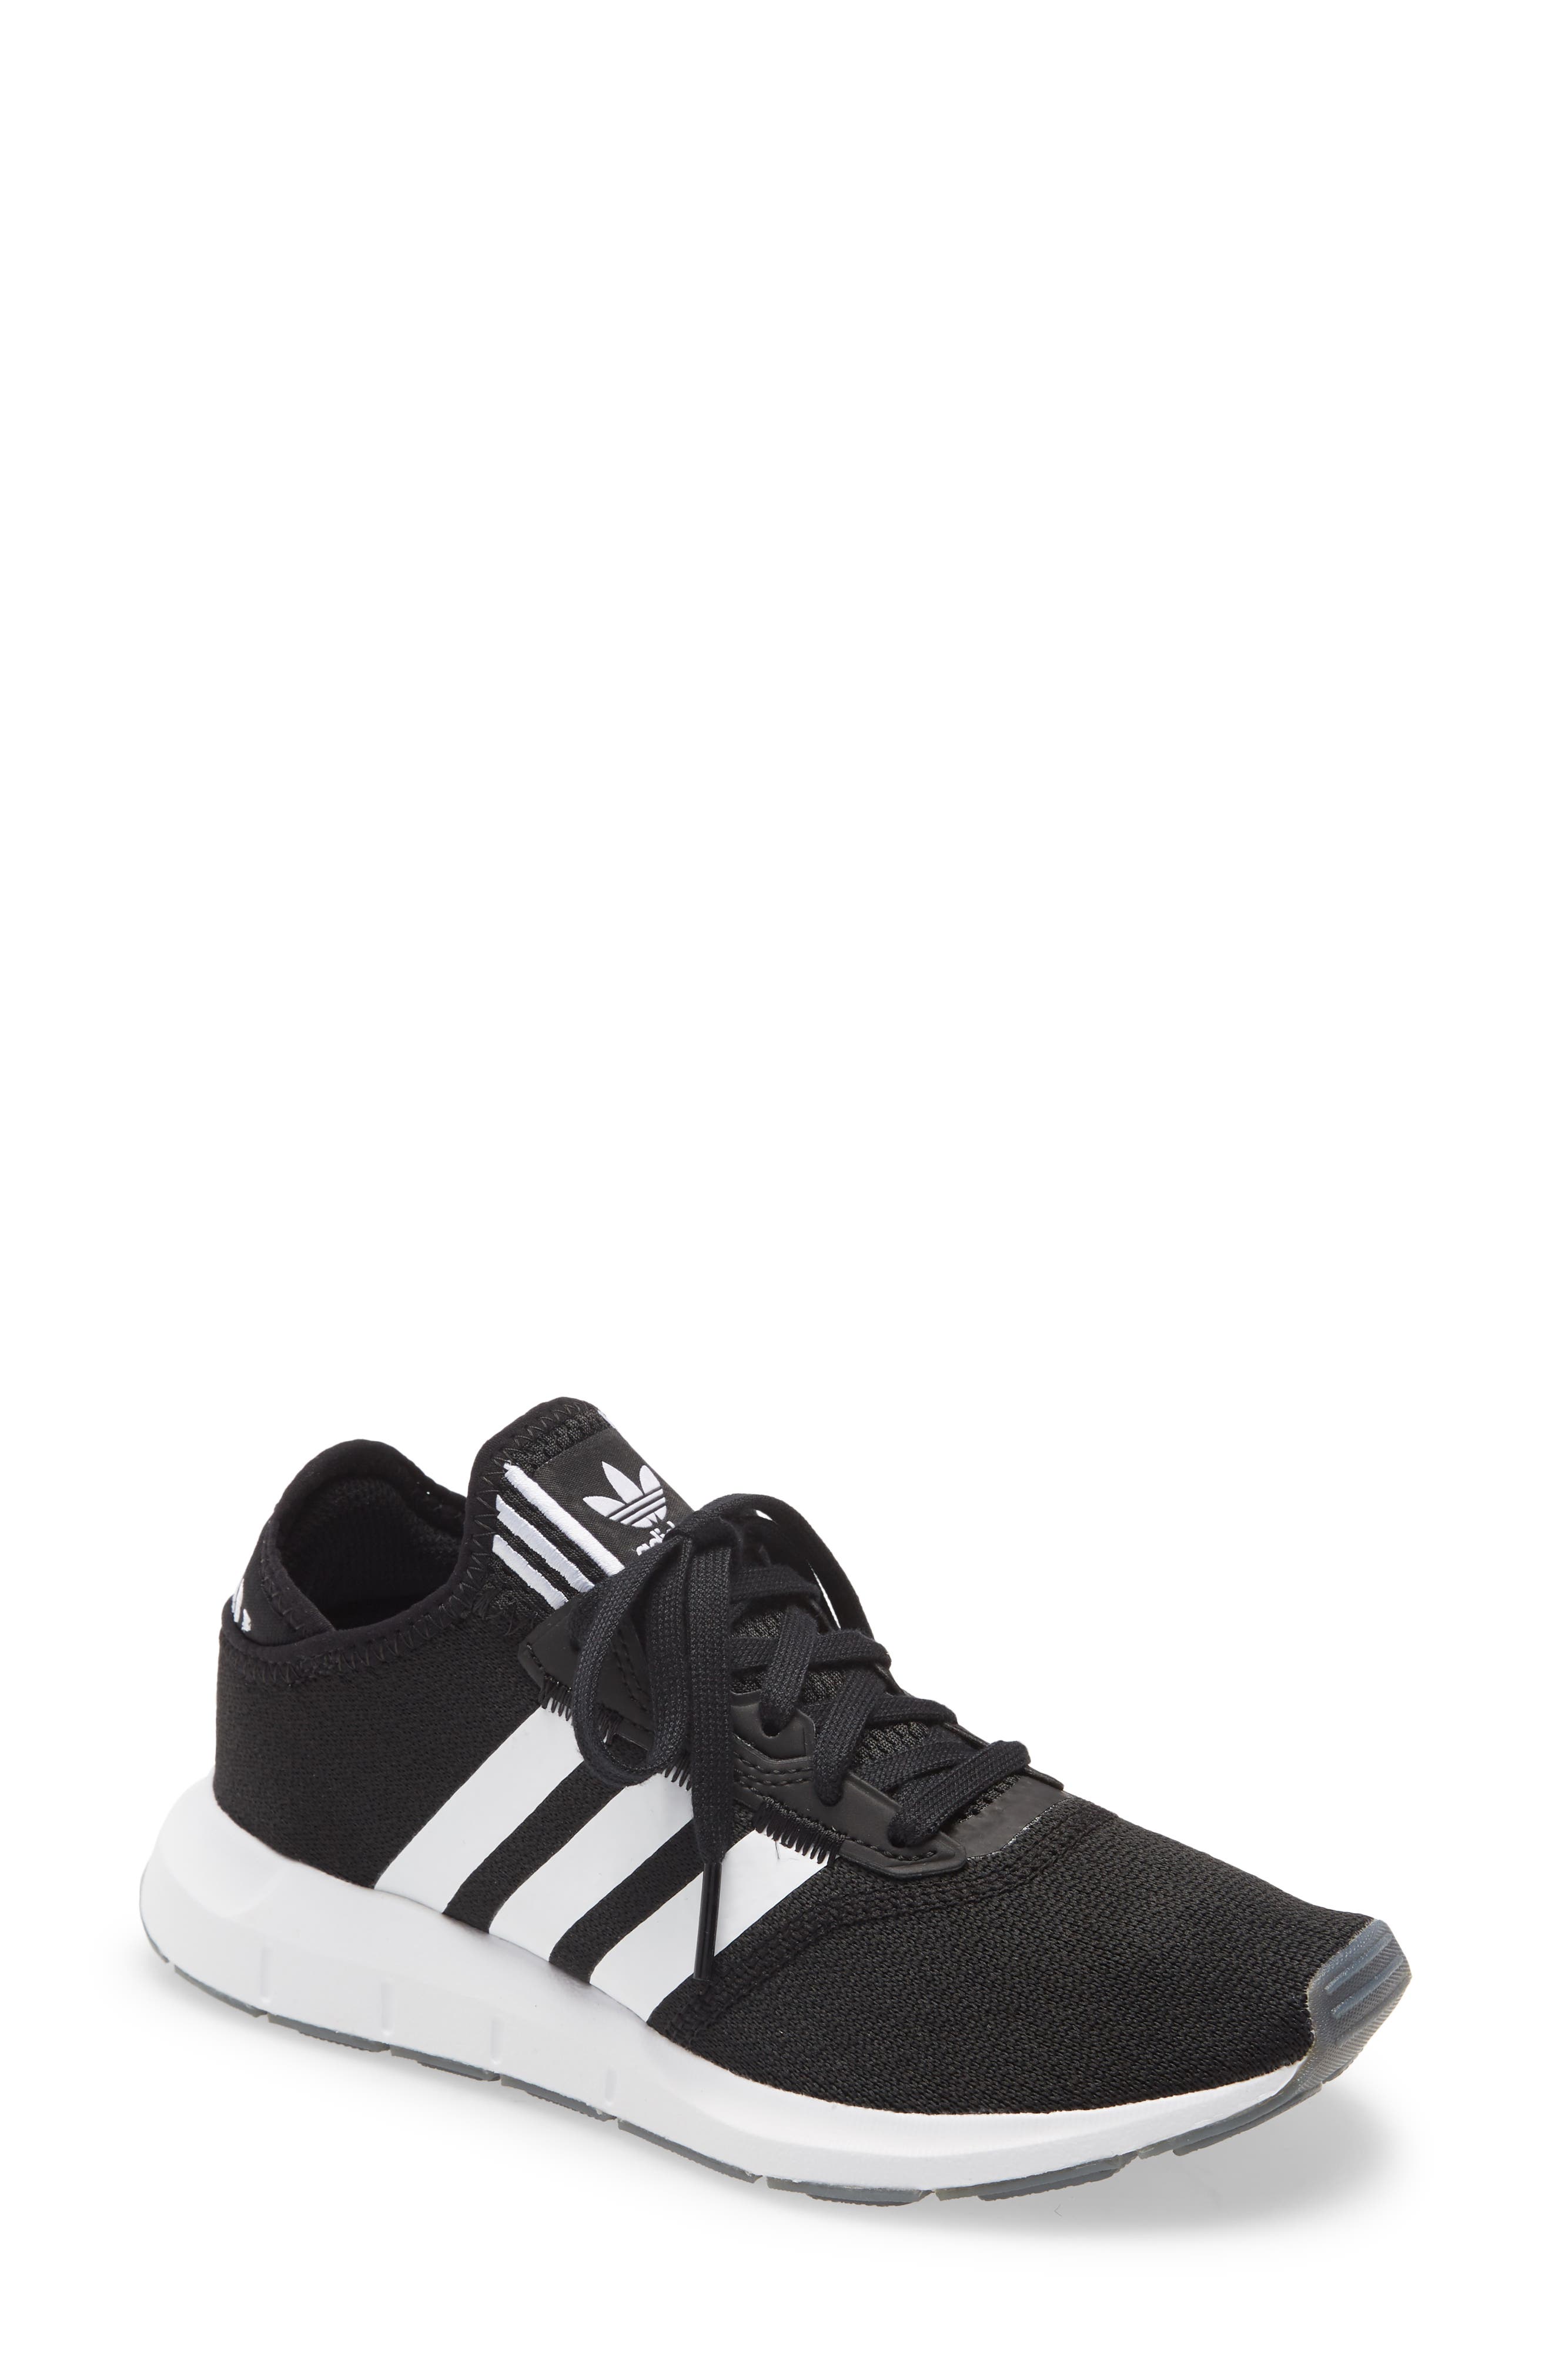 Sneakers \u0026 Athletic Shoes | Nordstrom